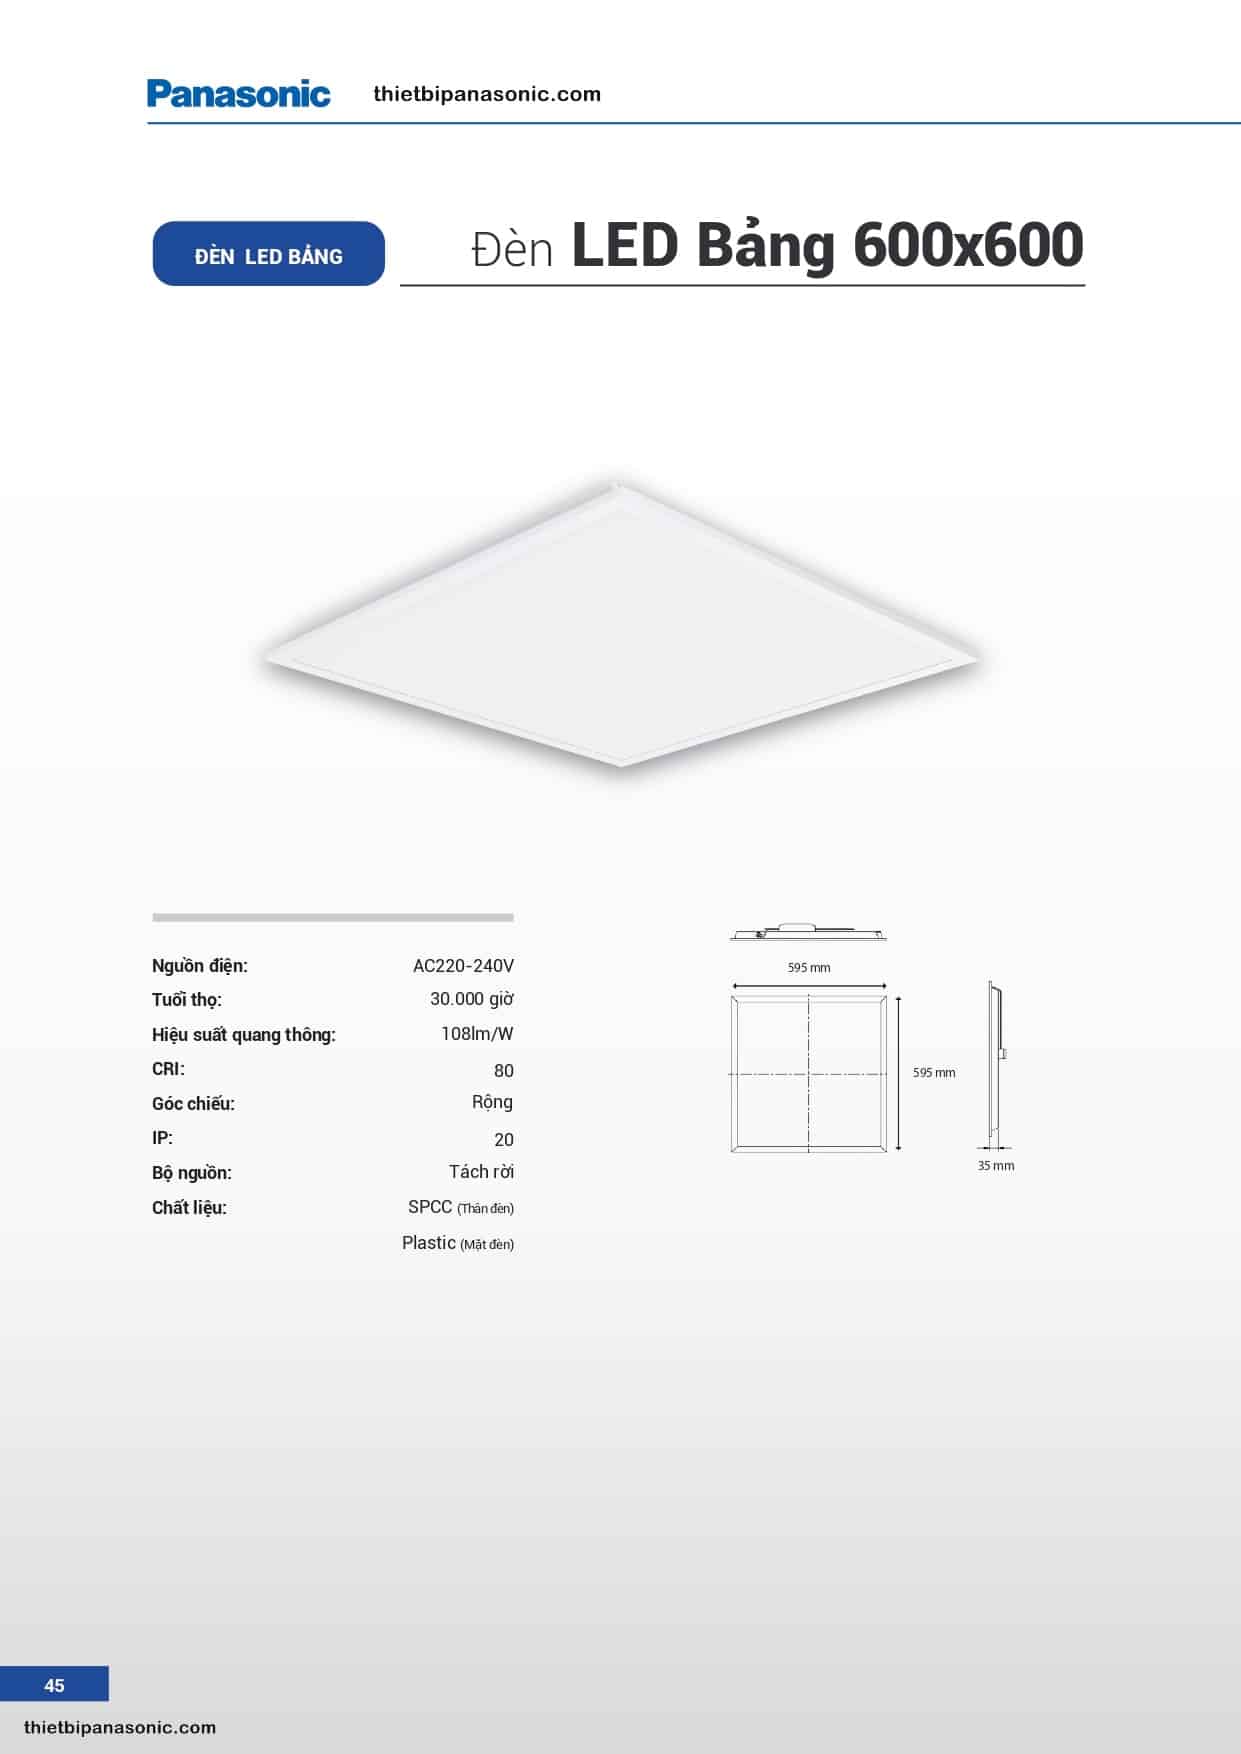 Catalogue - Bảng giá đèn LED Panel Panasonic 600x600mm